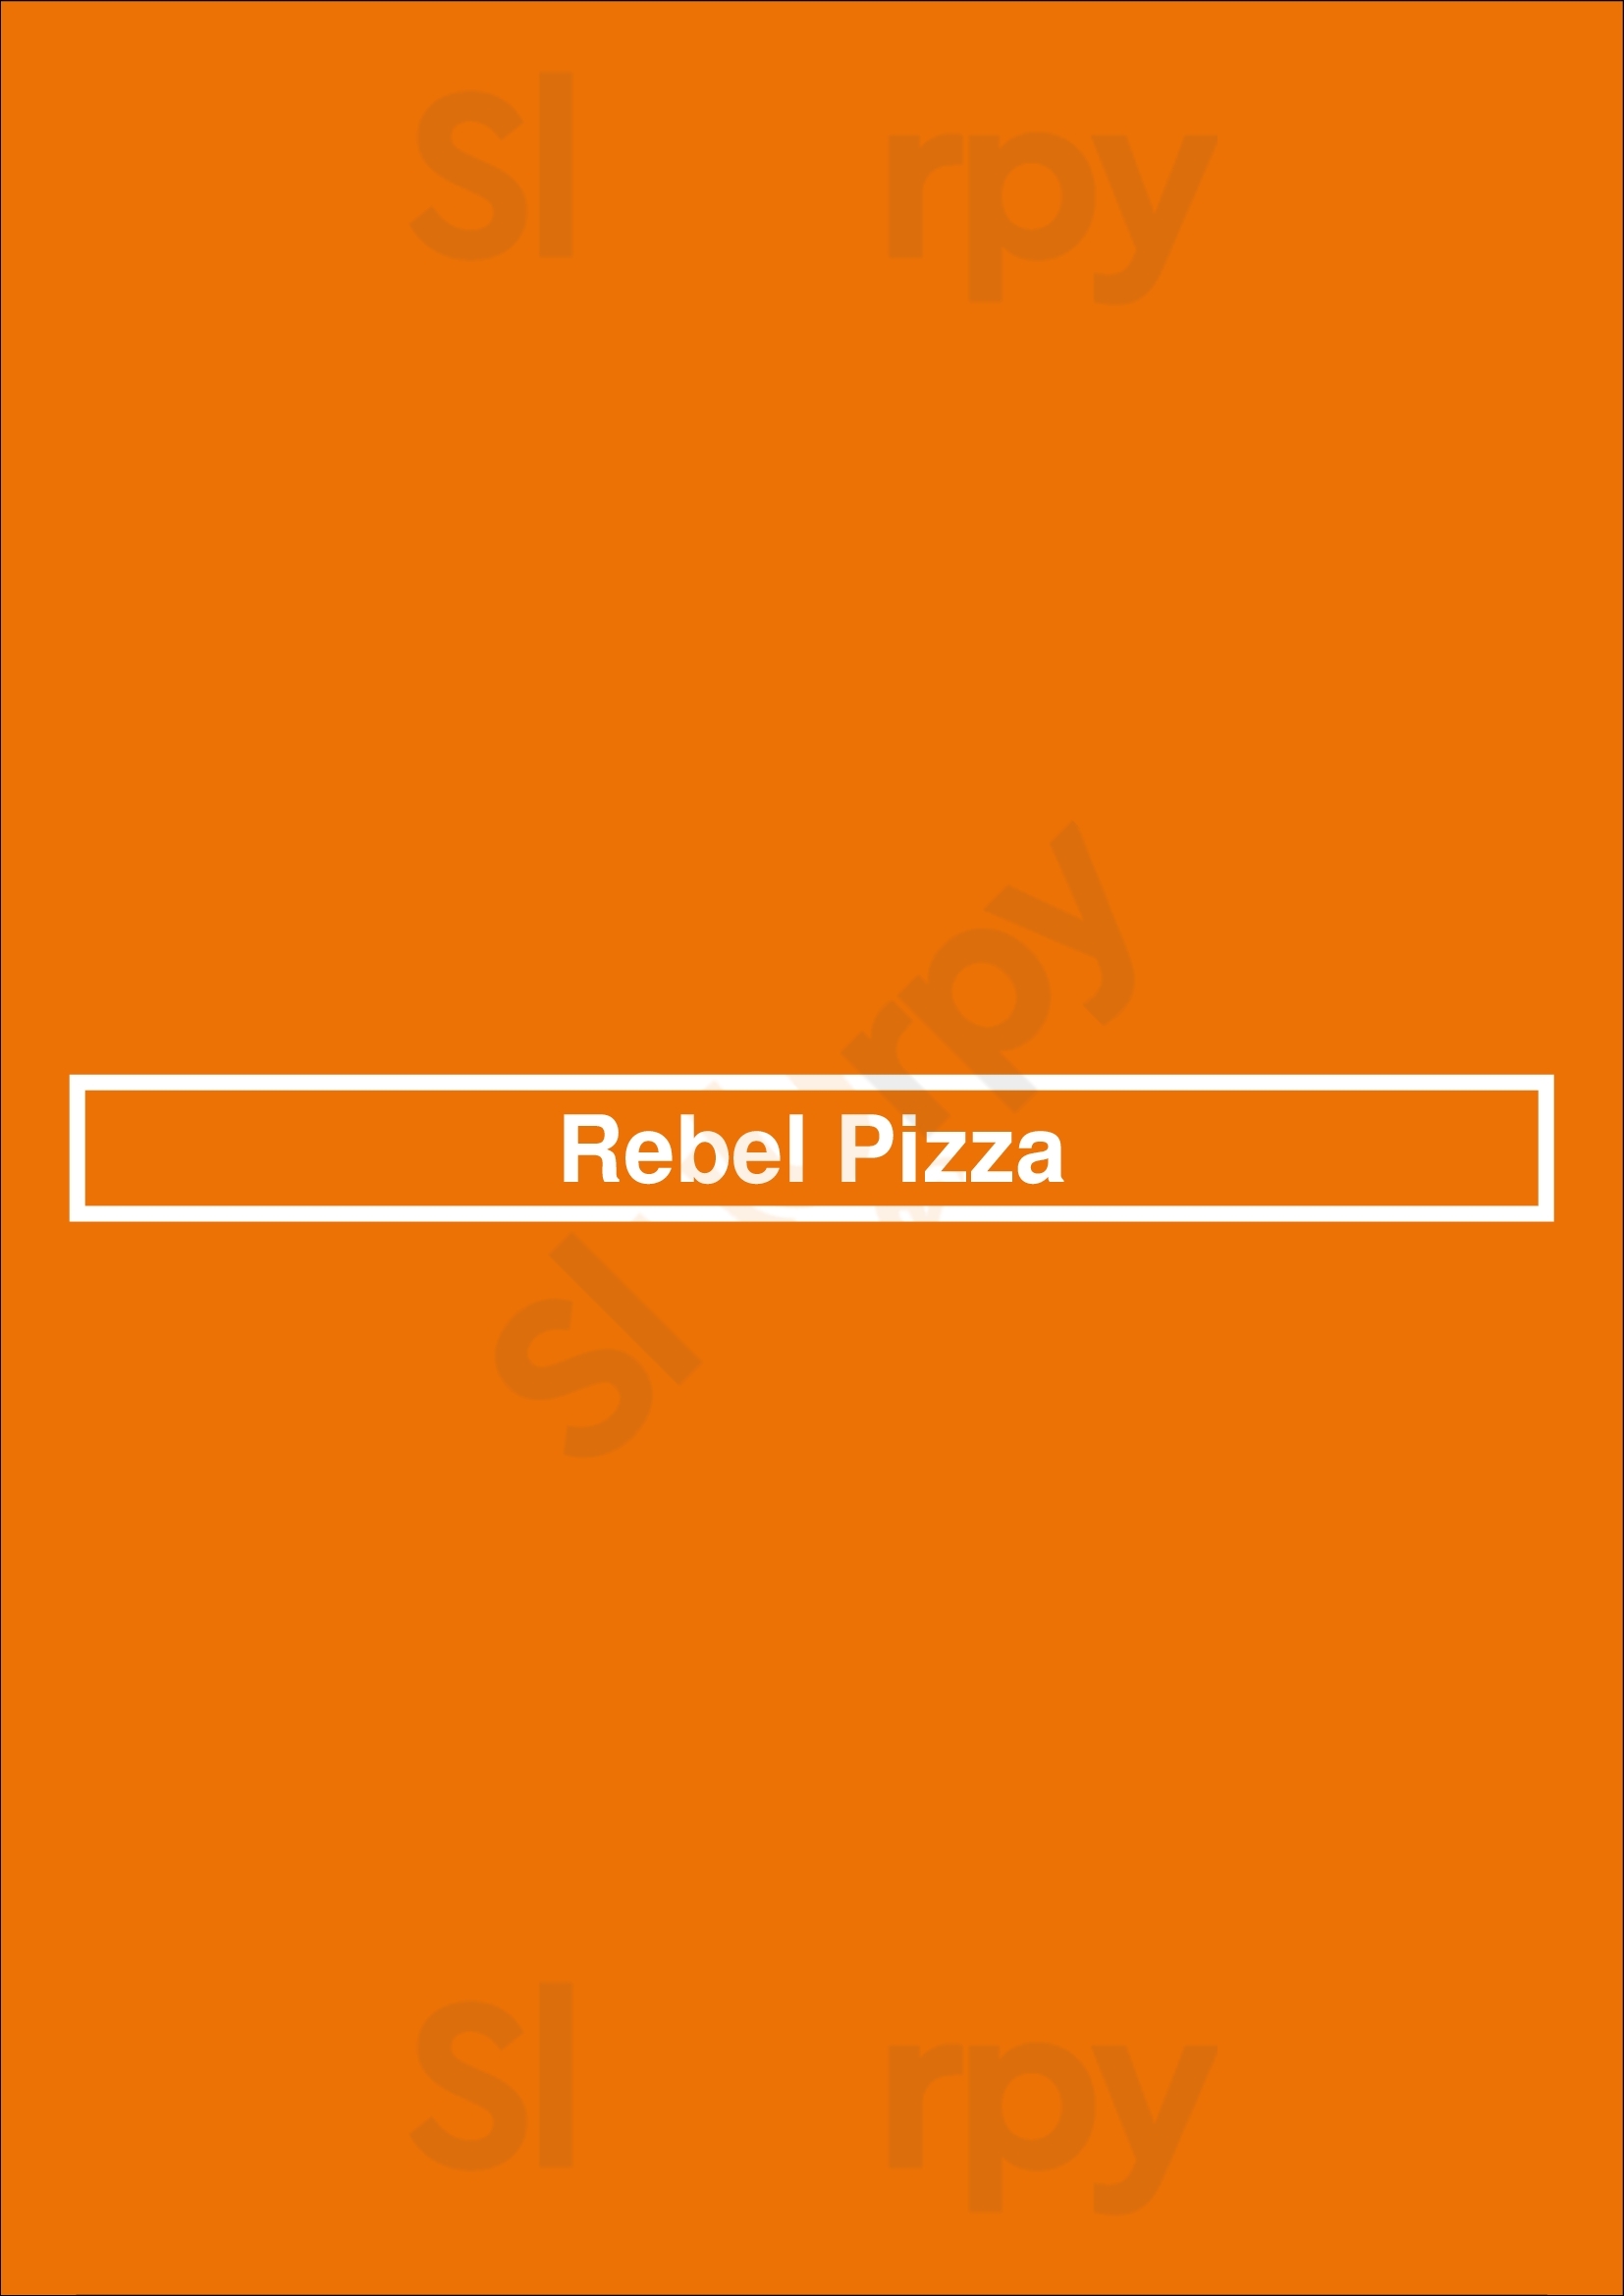 Rebel Pizza Winnipeg Menu - 1